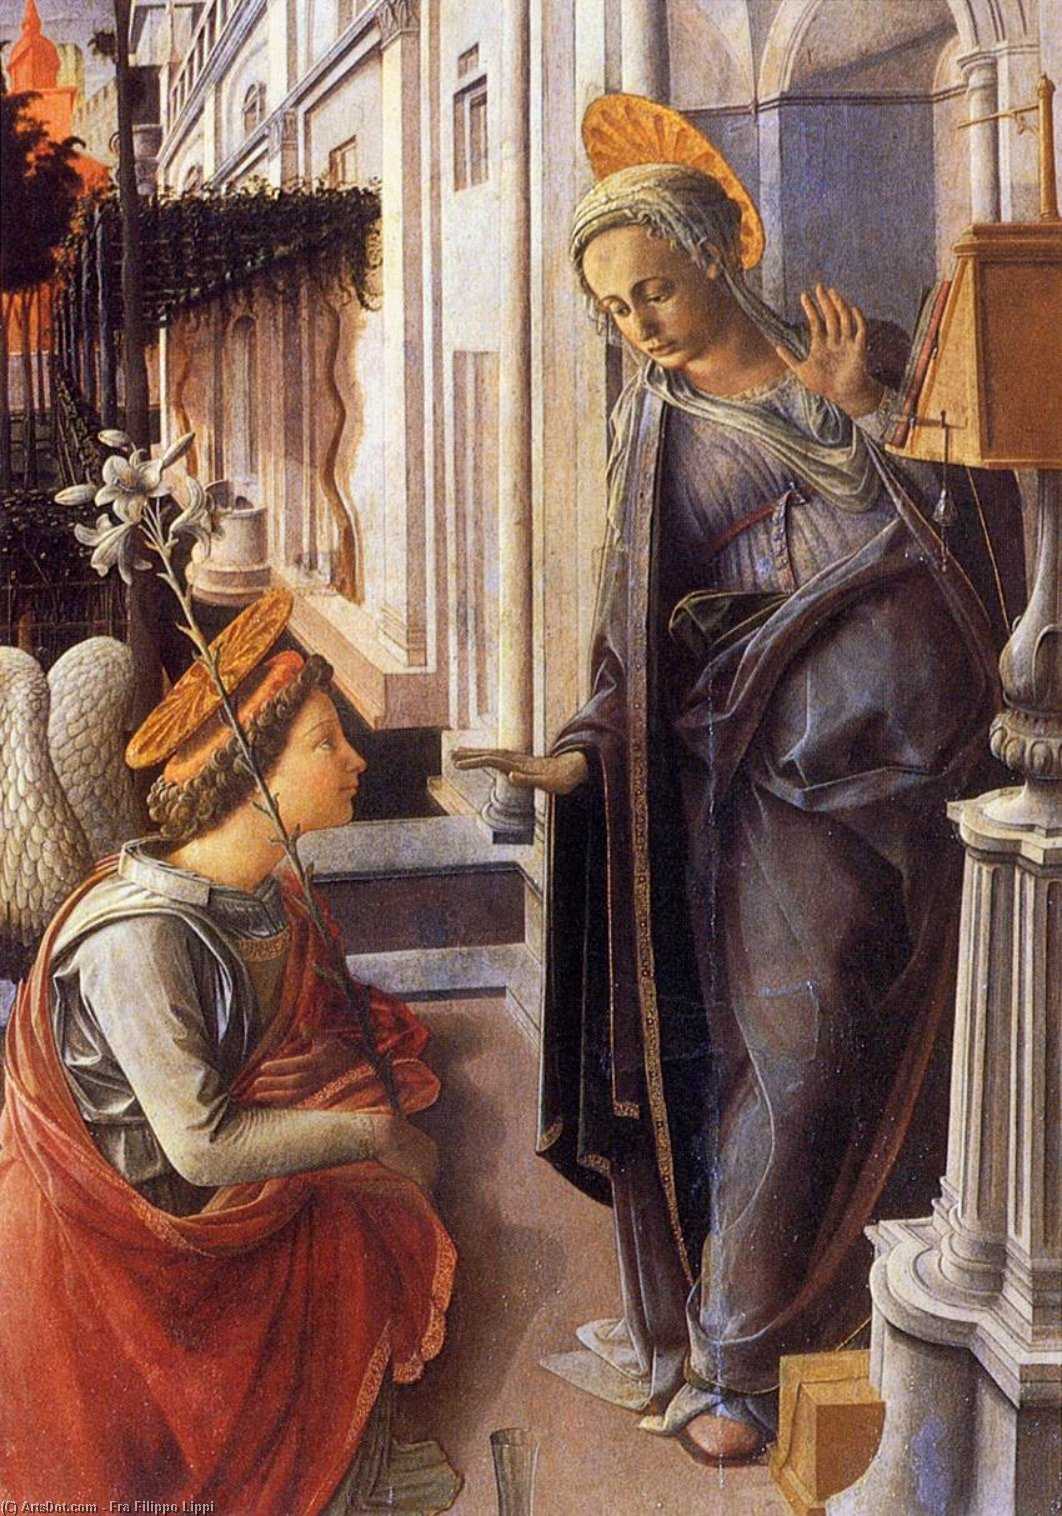 Богородица с младенцем мадонна палеохристианское и византийское происхождение и окончательный романский и готический